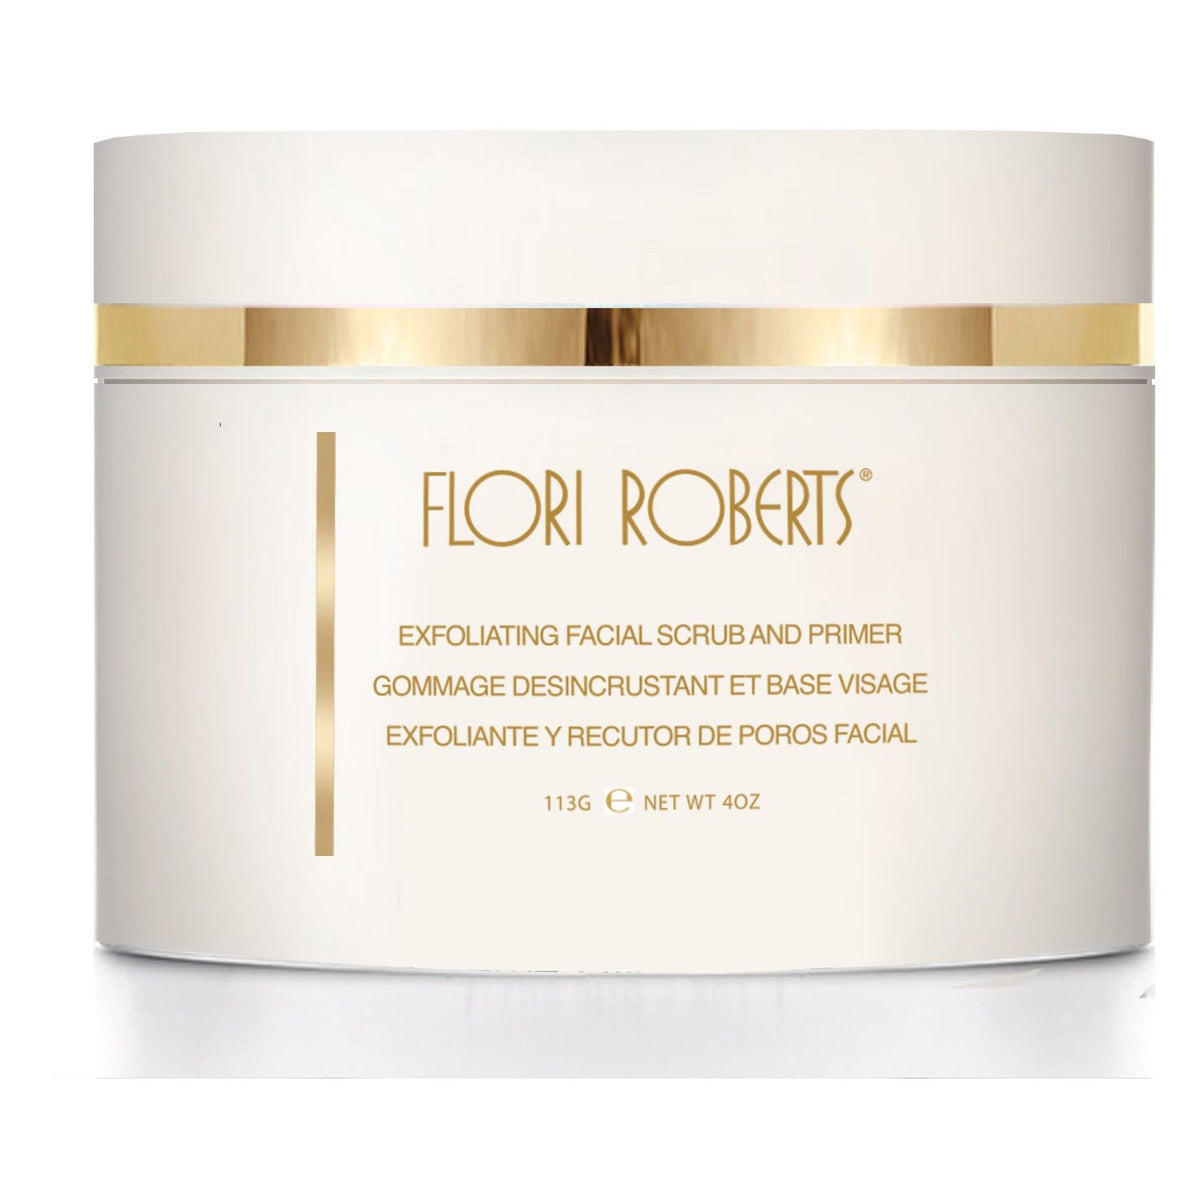 Flori Roberts - Exfoliating Facial Scrub